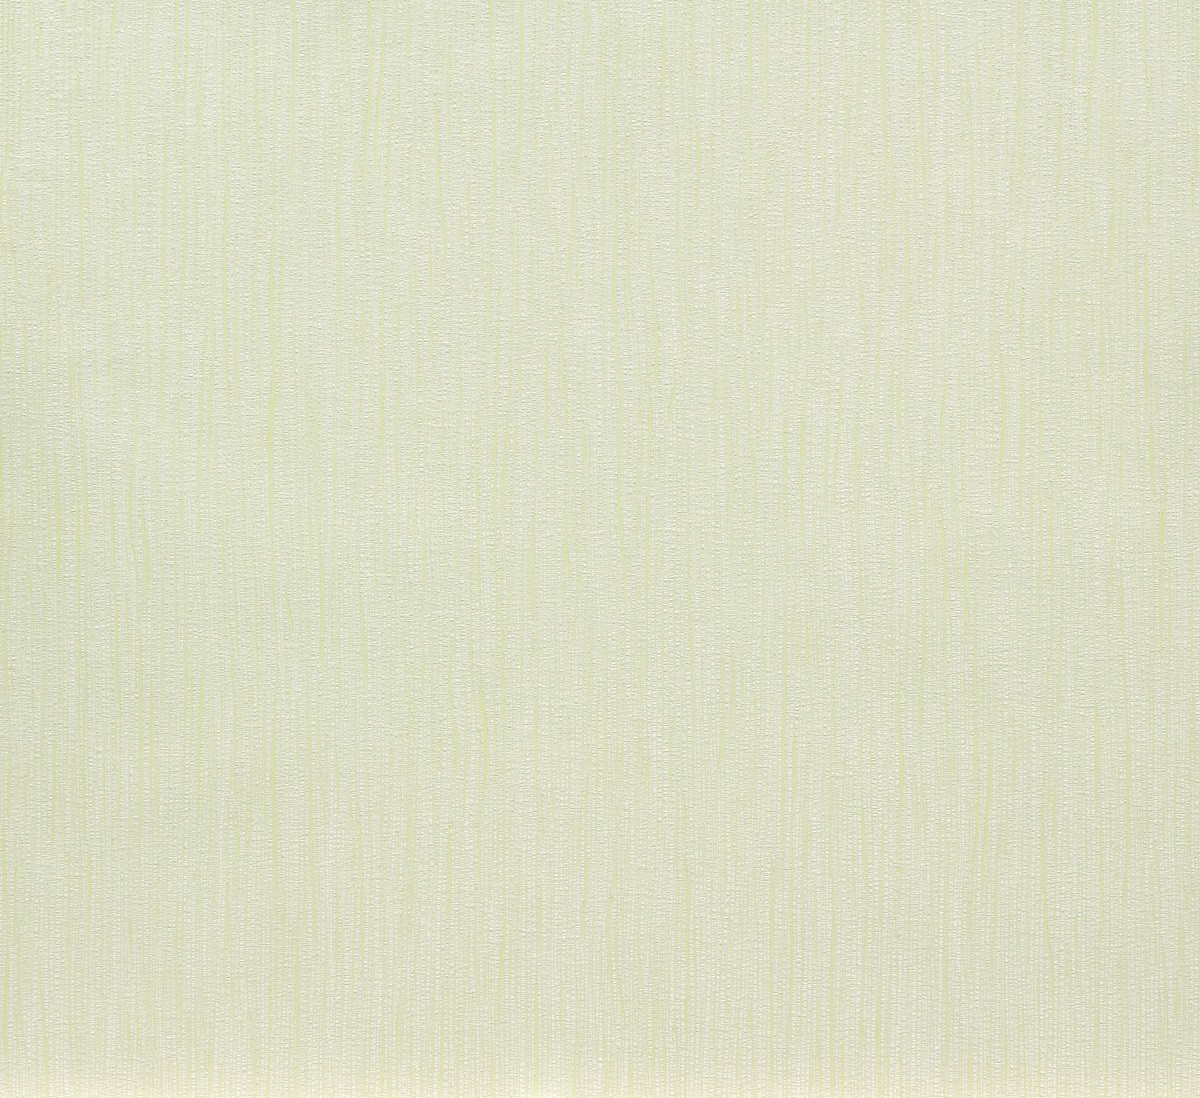 Vliestapete Strich Design blassgrün weiß 56526 Marburg